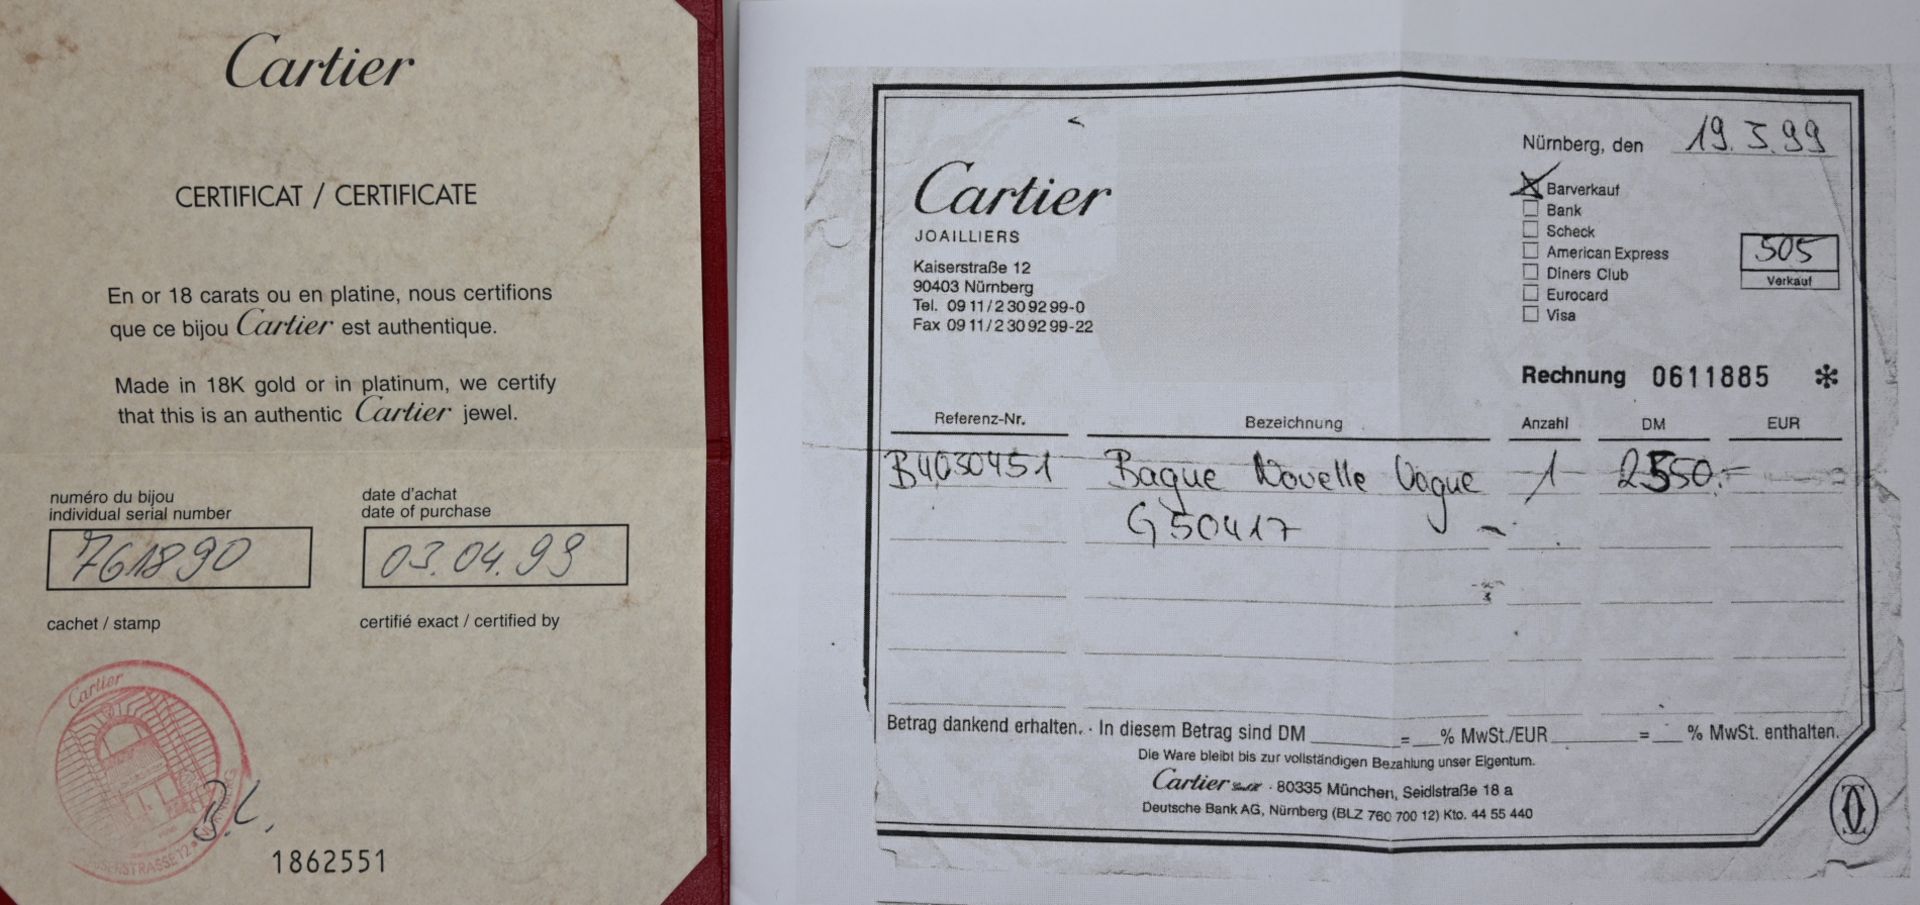 1 Damenring CARTIER GG 18ct., mit Perle (D. ca. 0,8cm), mit Rechnungskopie: gekauft 1999 für 2.550 - Image 3 of 3